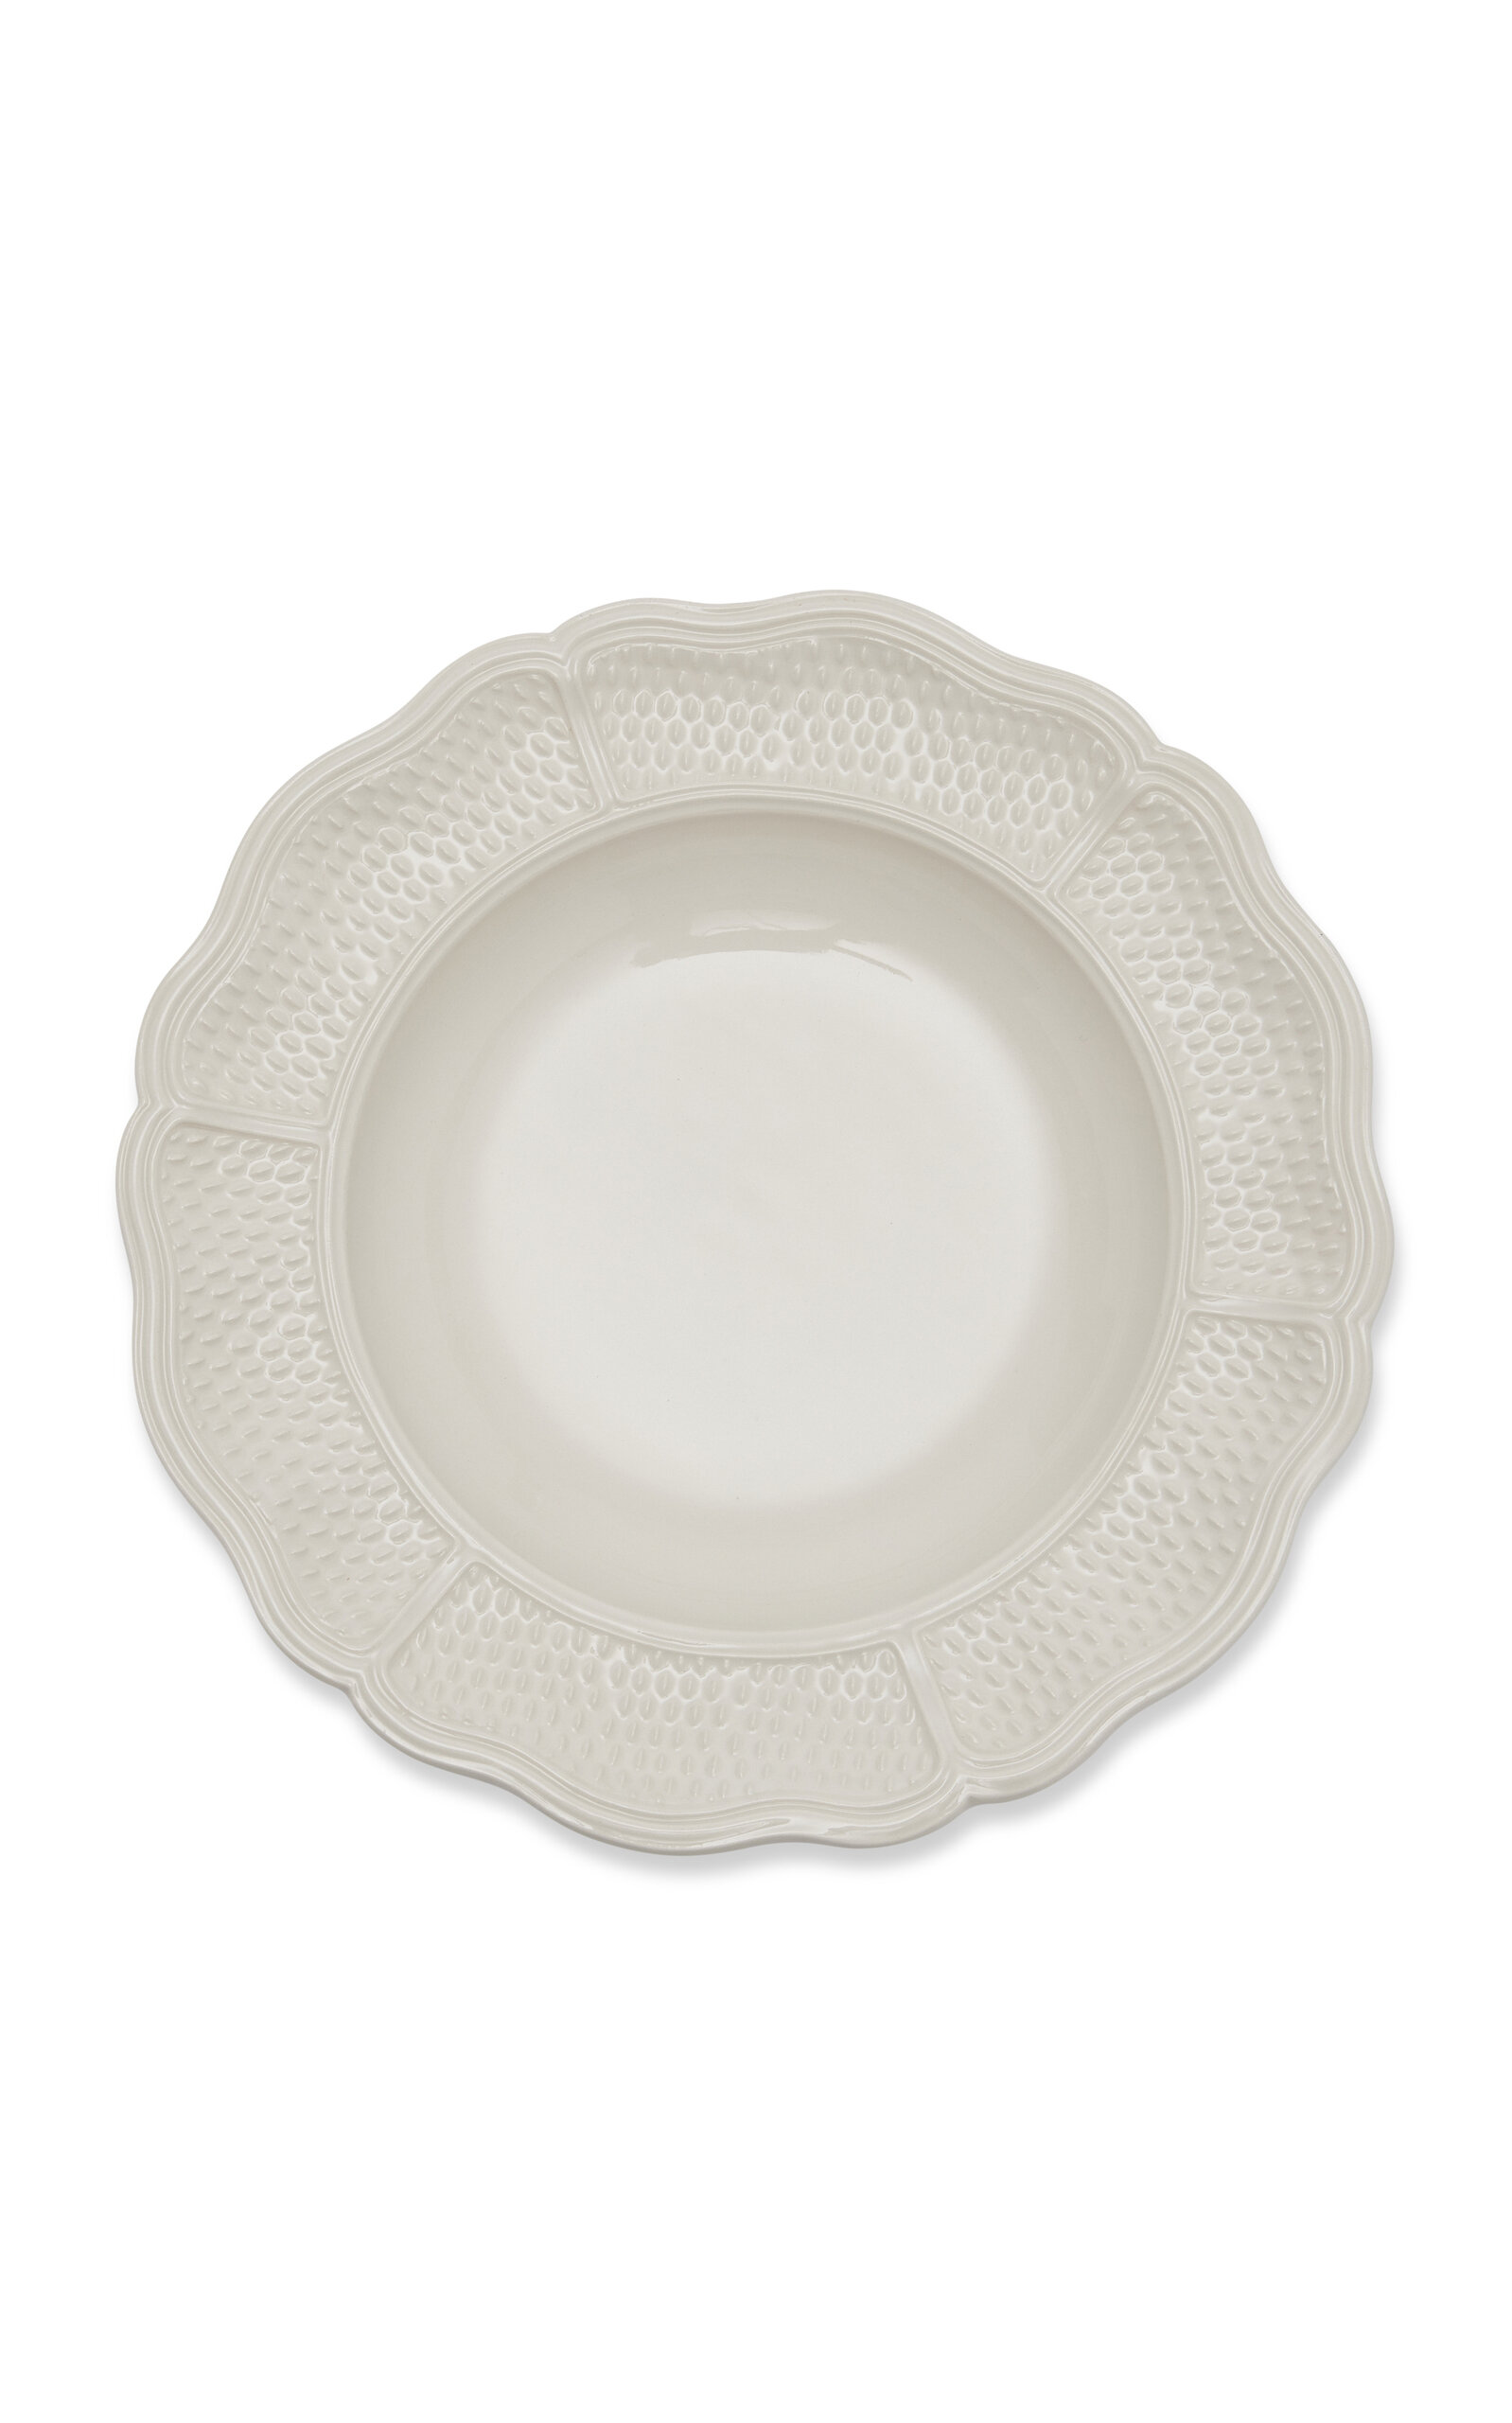 Moda Domus Doots Creamware Soup Plate In White